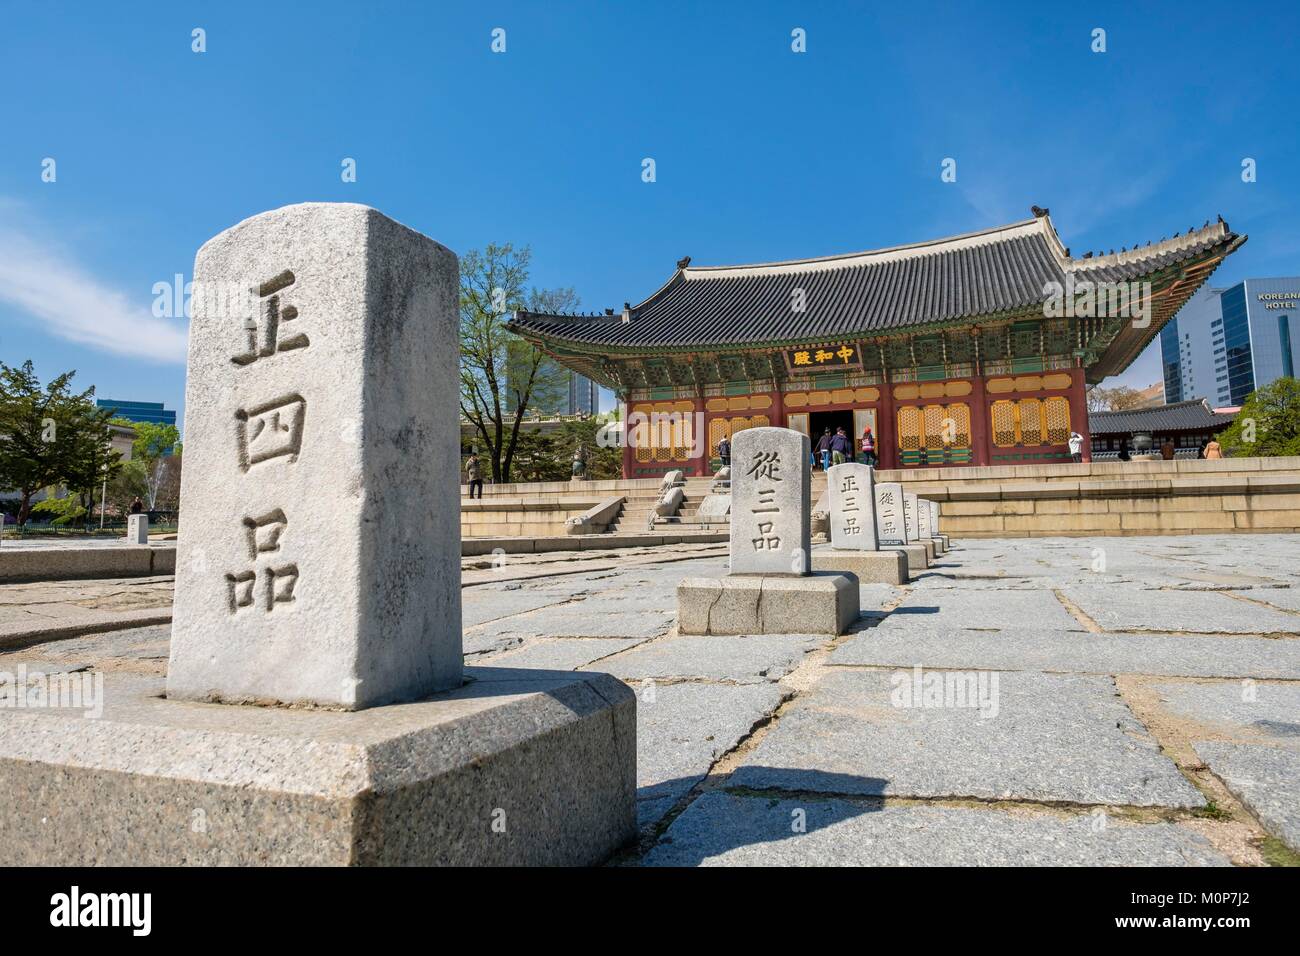 La Corée du Sud, Séoul, Jung-gu district,palais Deoksugung ou palais de la longévité vertueuse construit par les rois de la dynastie Joseon Banque D'Images